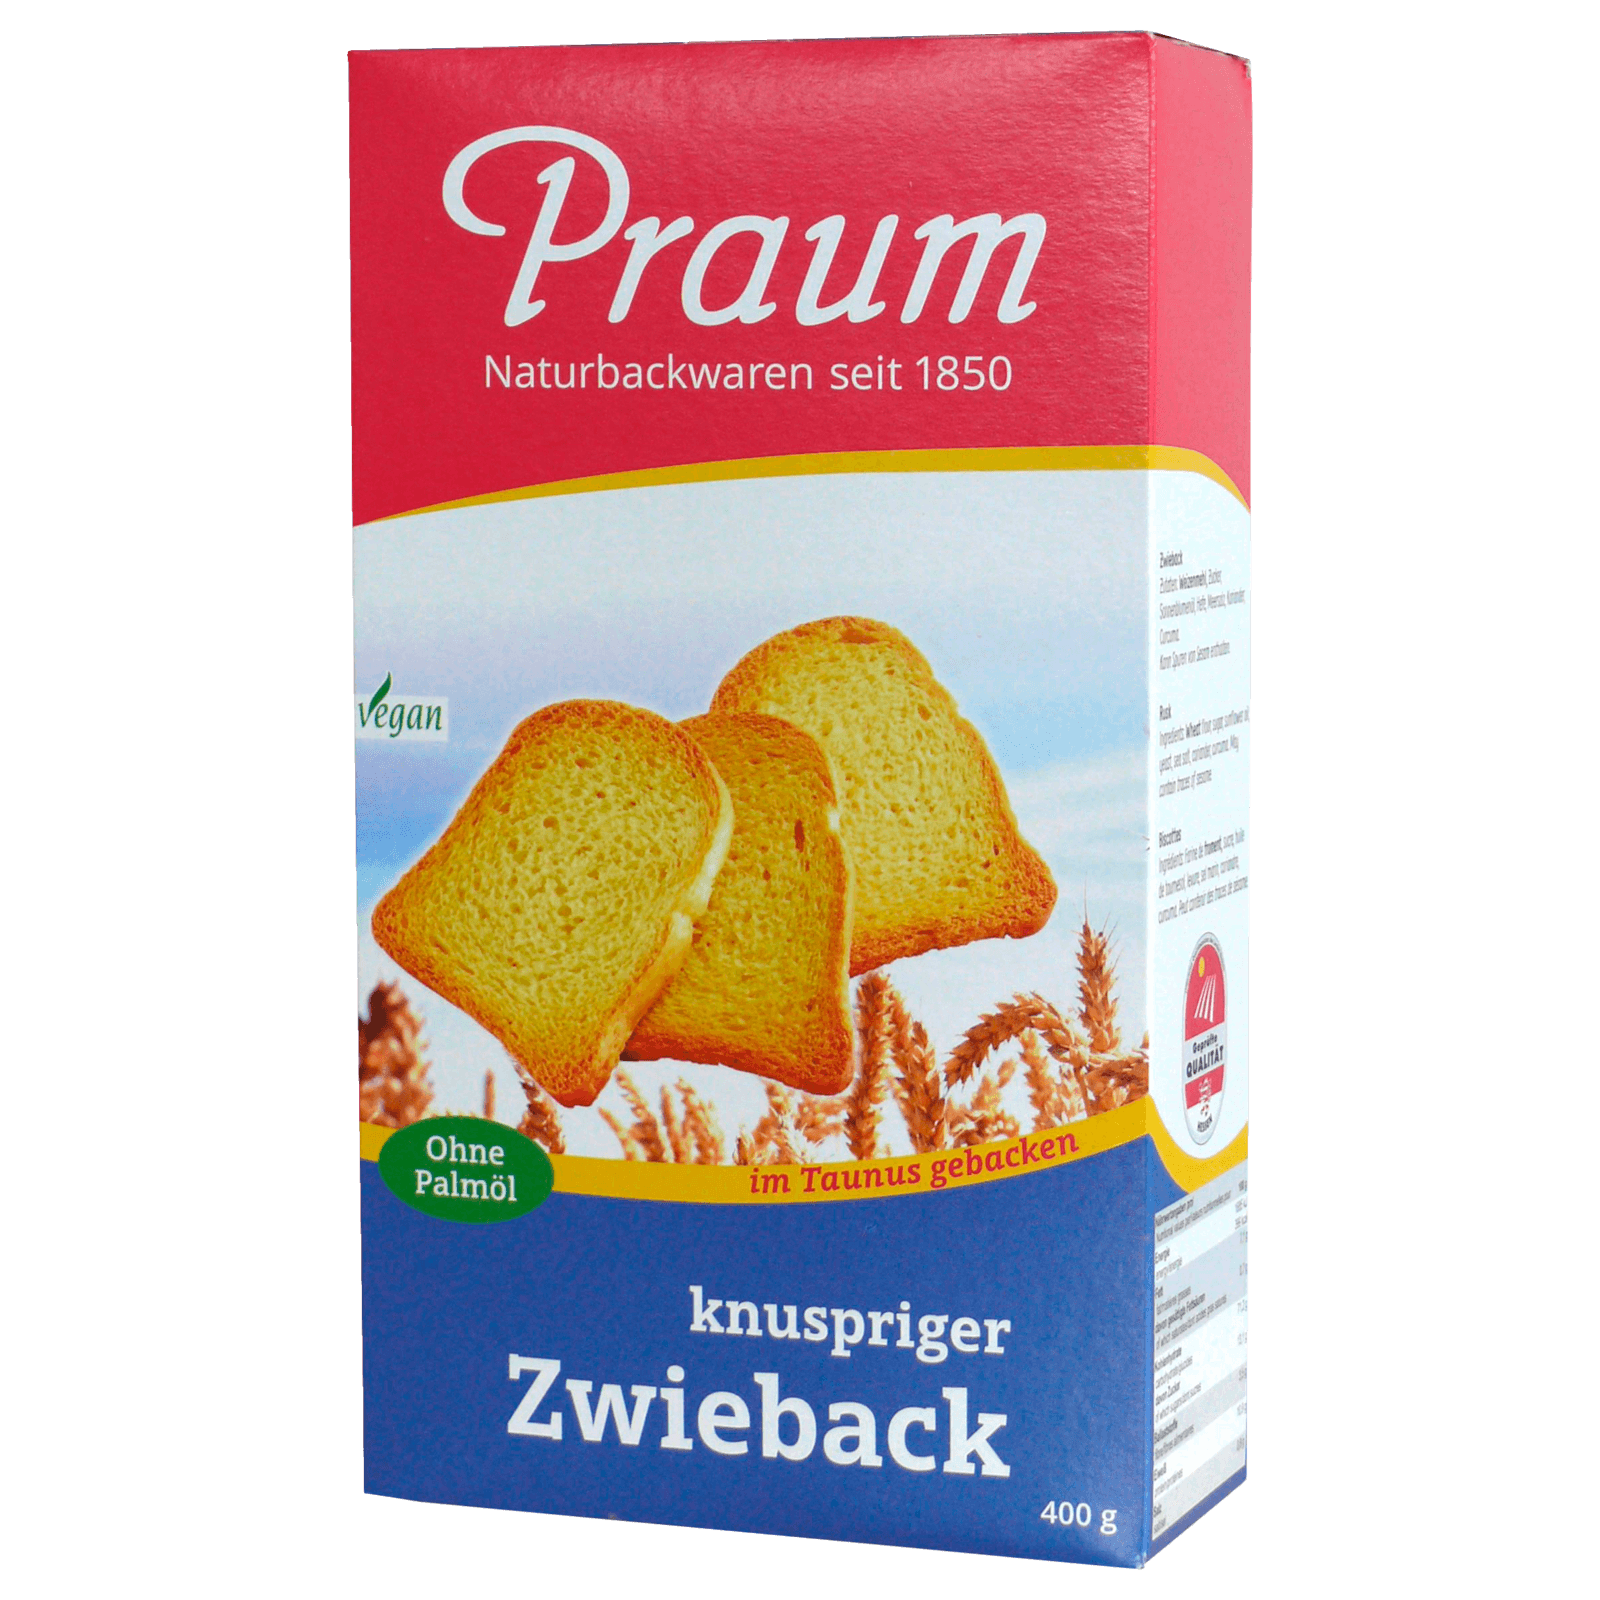 Praum Zwieback 400g bei REWE online bestellen! REWE.de